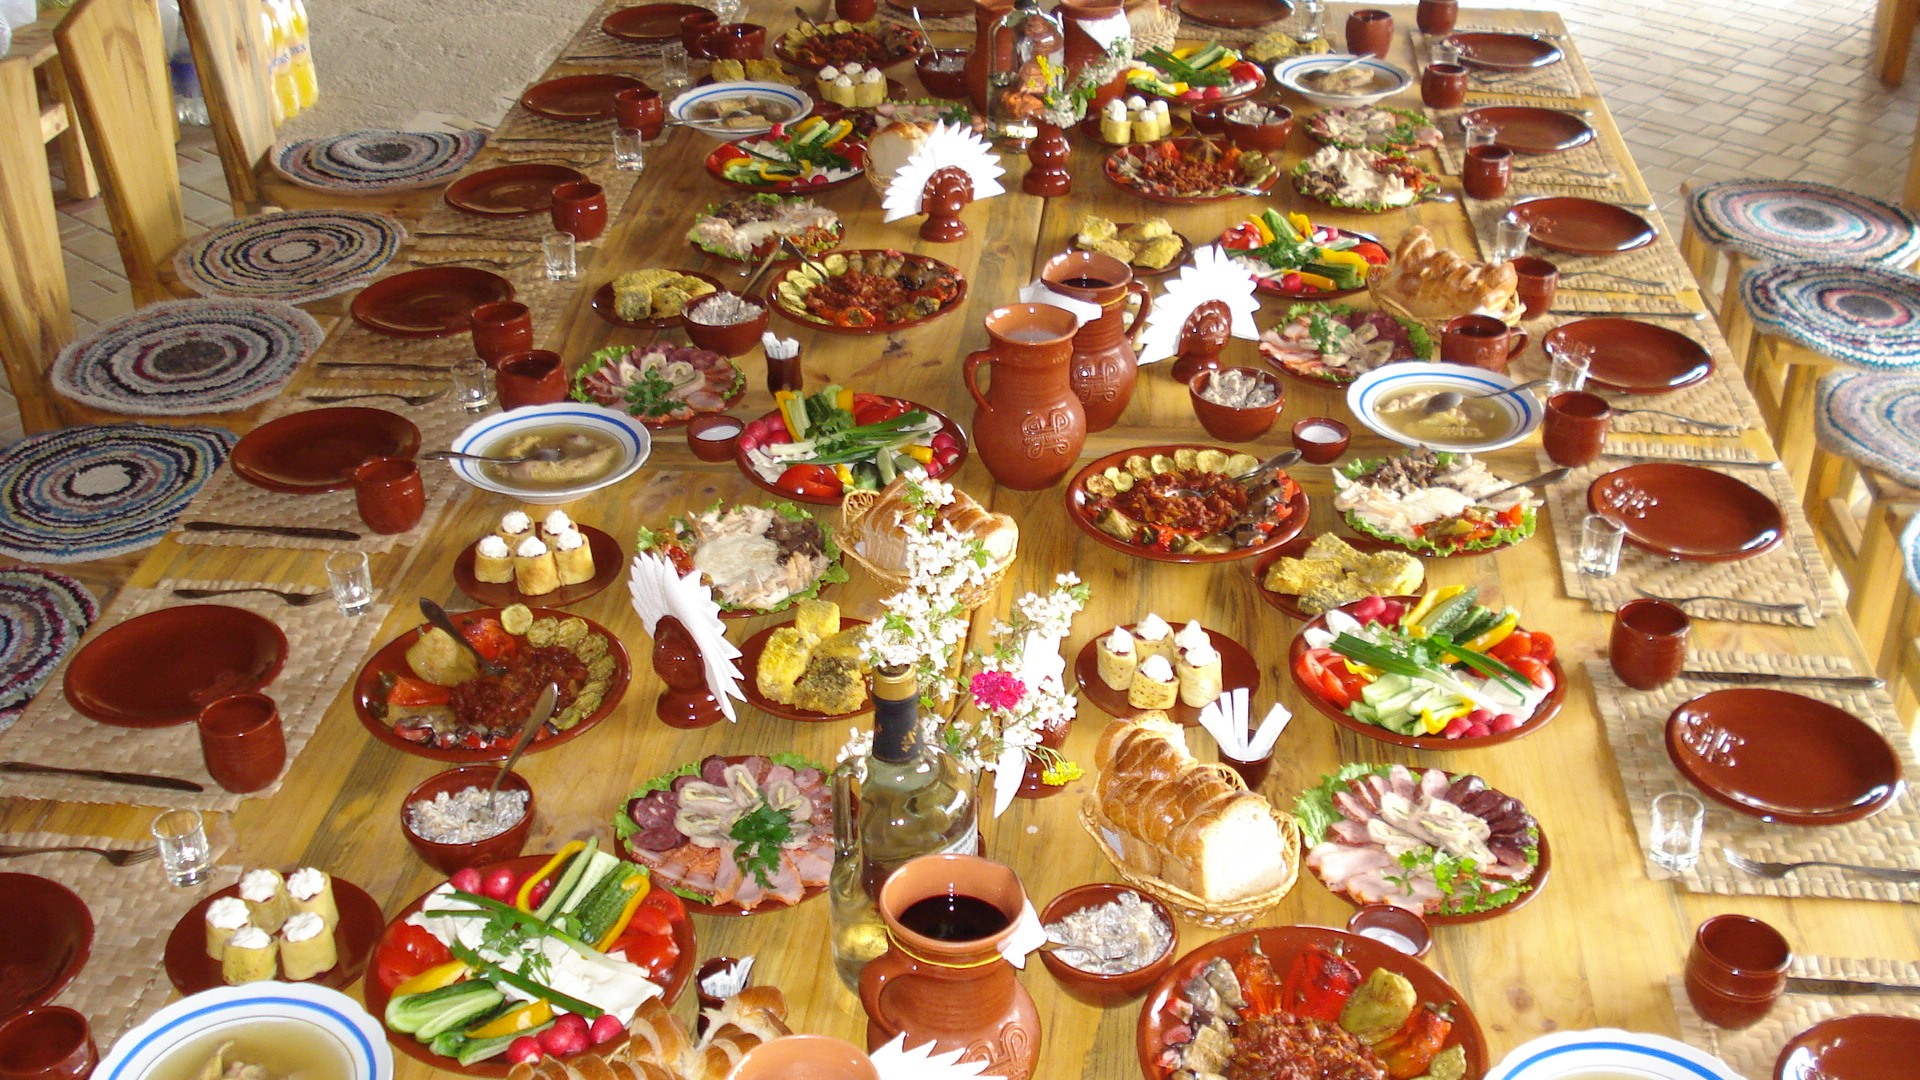 16 заведений, где можно вкусно поесть во время путешествия по Молдове